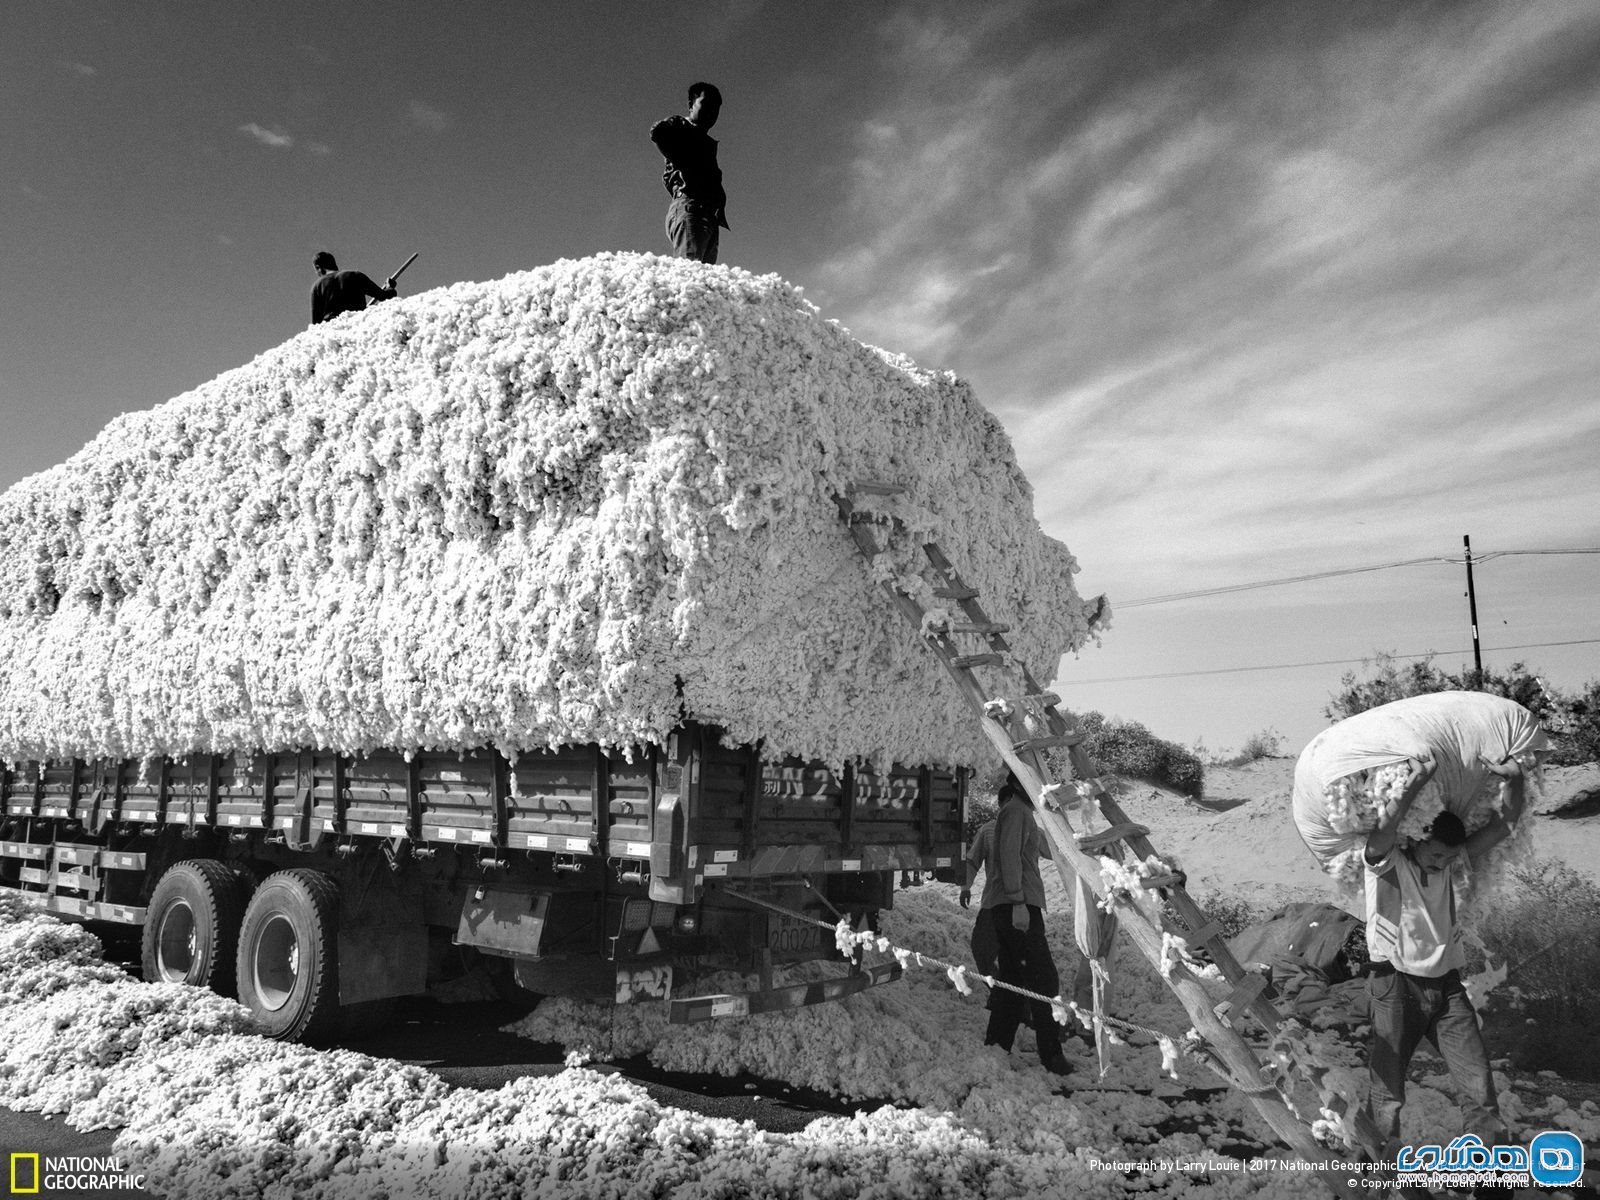 عکس منتخب نشنال جئوگرافیک | کارگران مزارع کتان